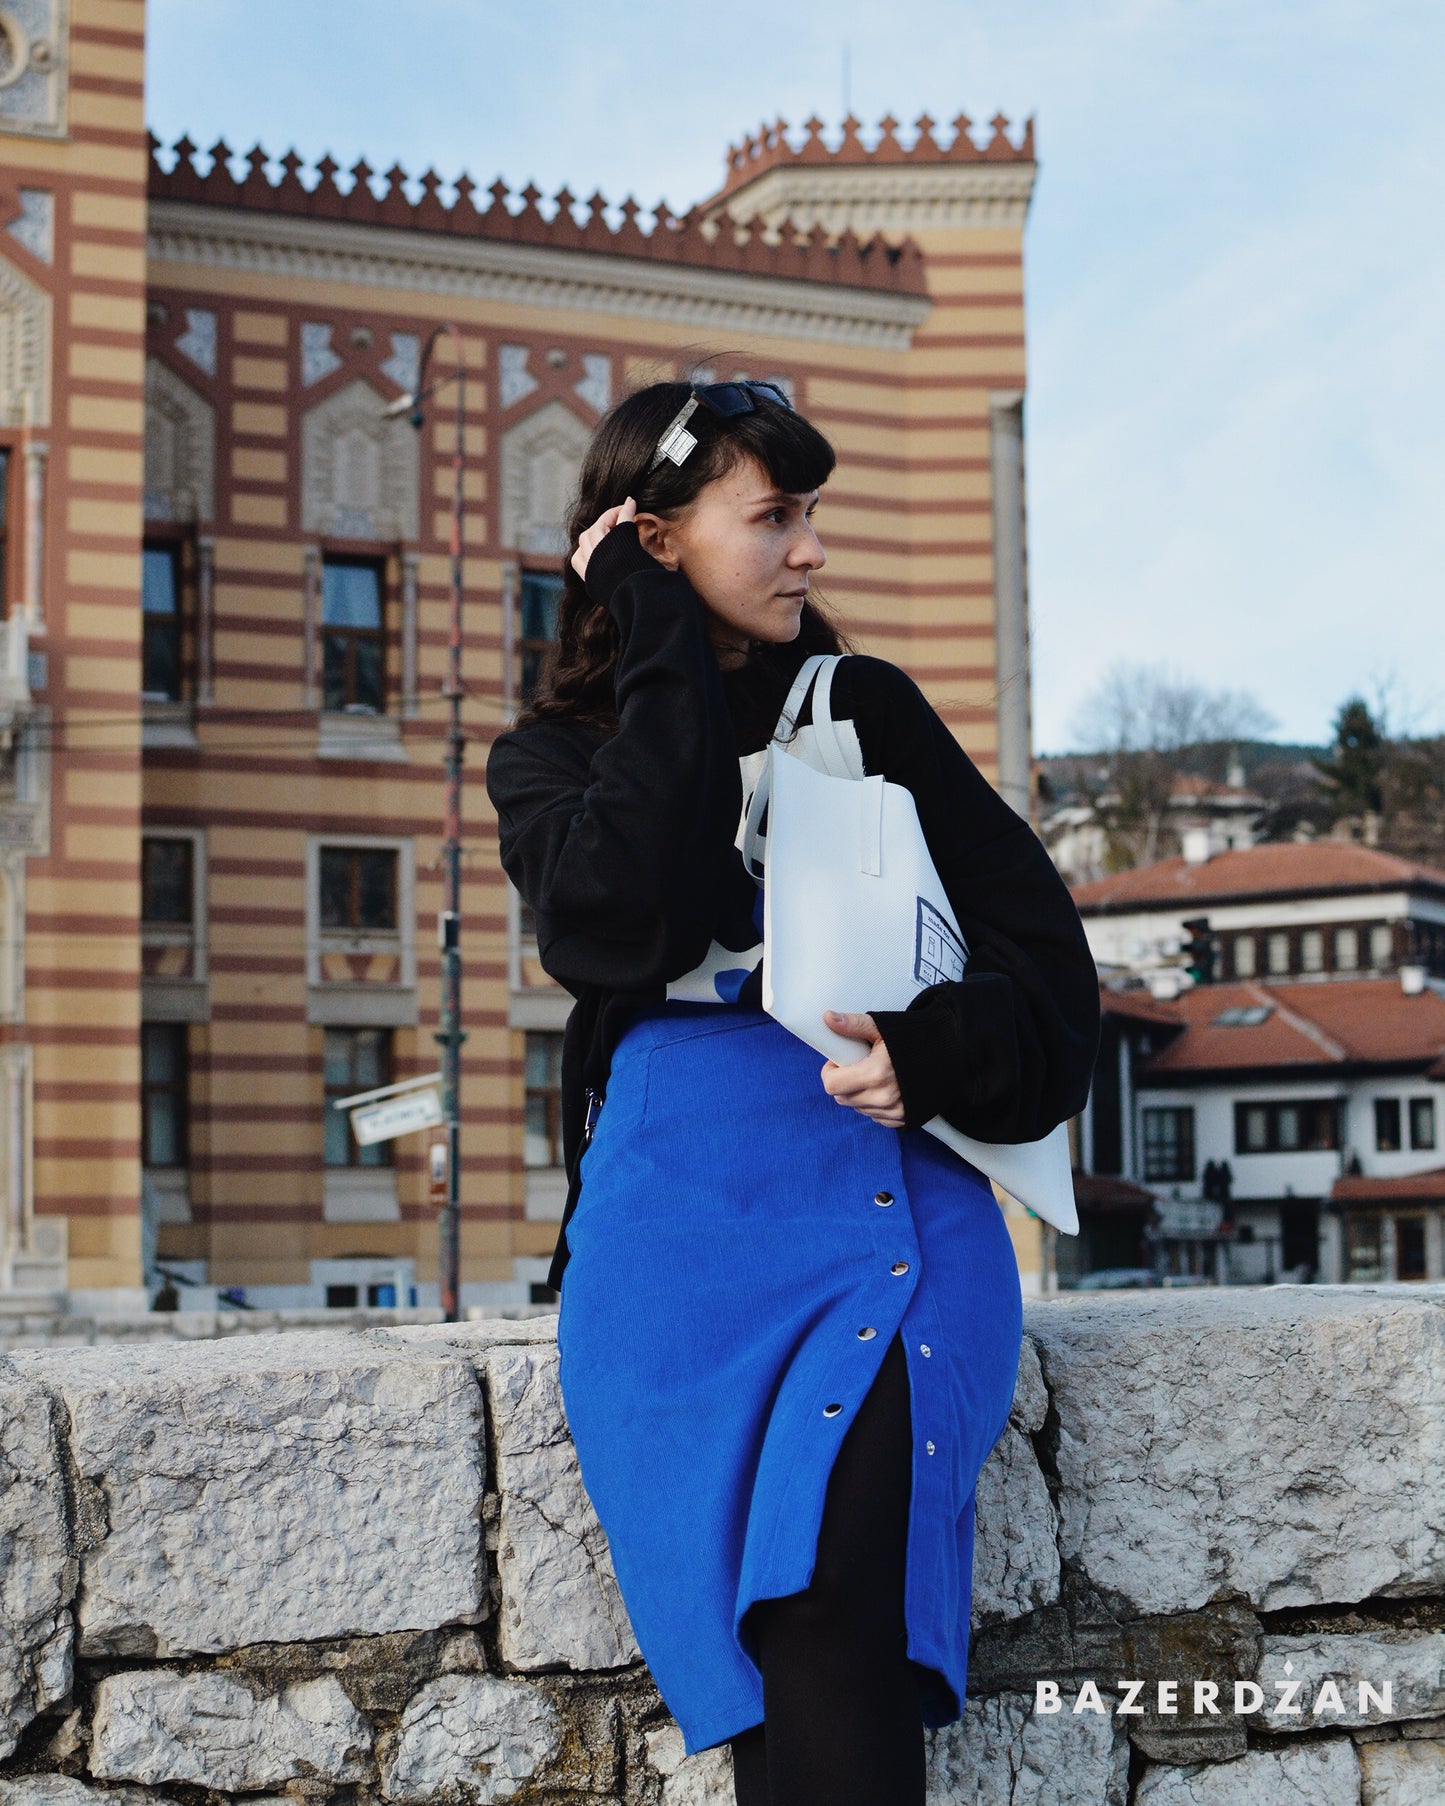 Corduroy Skirt by Bazerdzan Wear